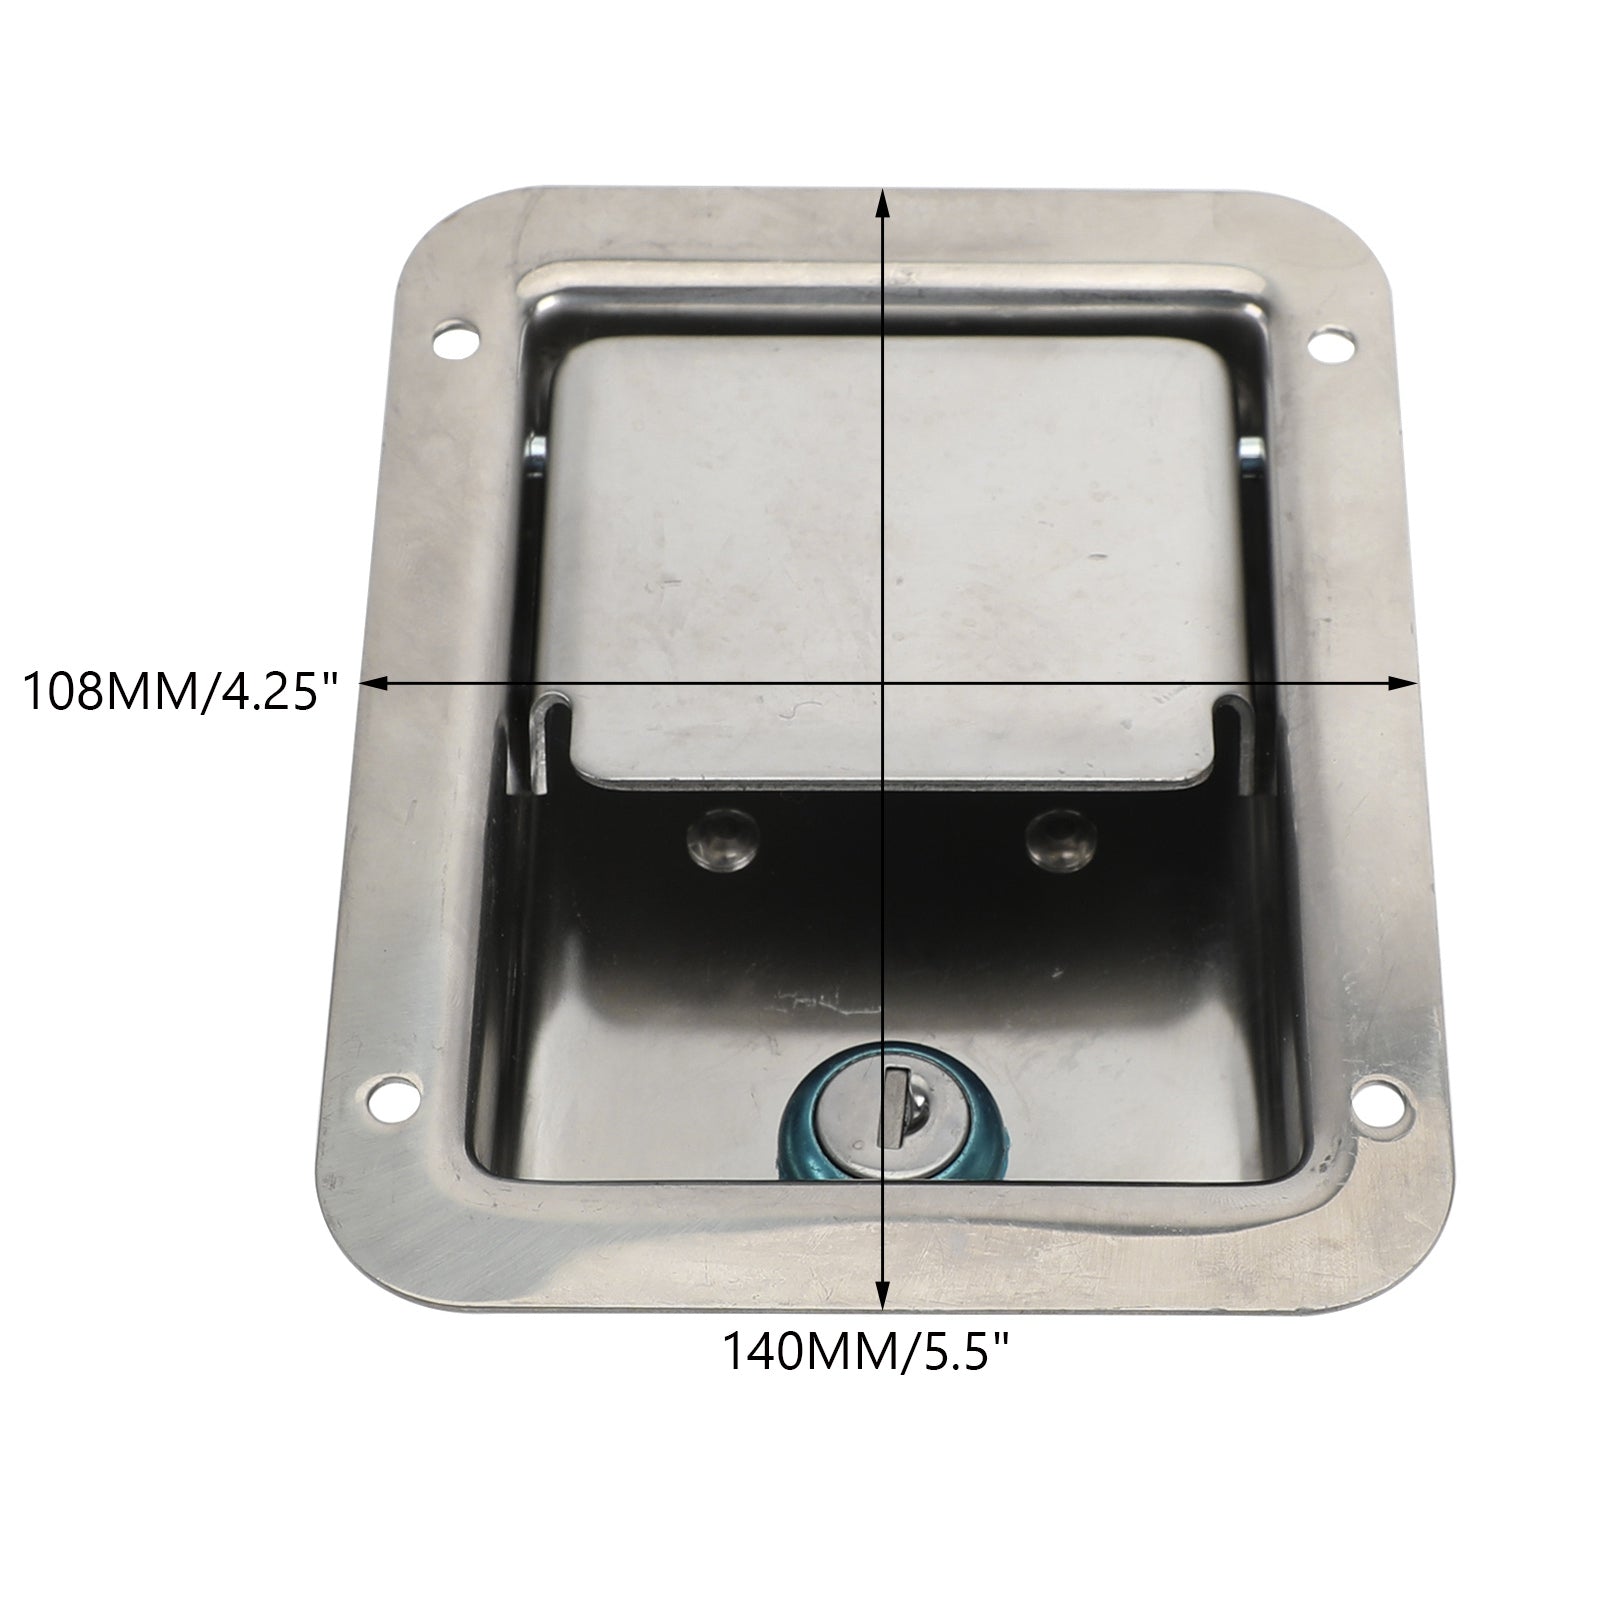 4×Stainless Steel Paddle Latch 5.5"*4.25" & Keys for Tool Box Lock RV Caravan